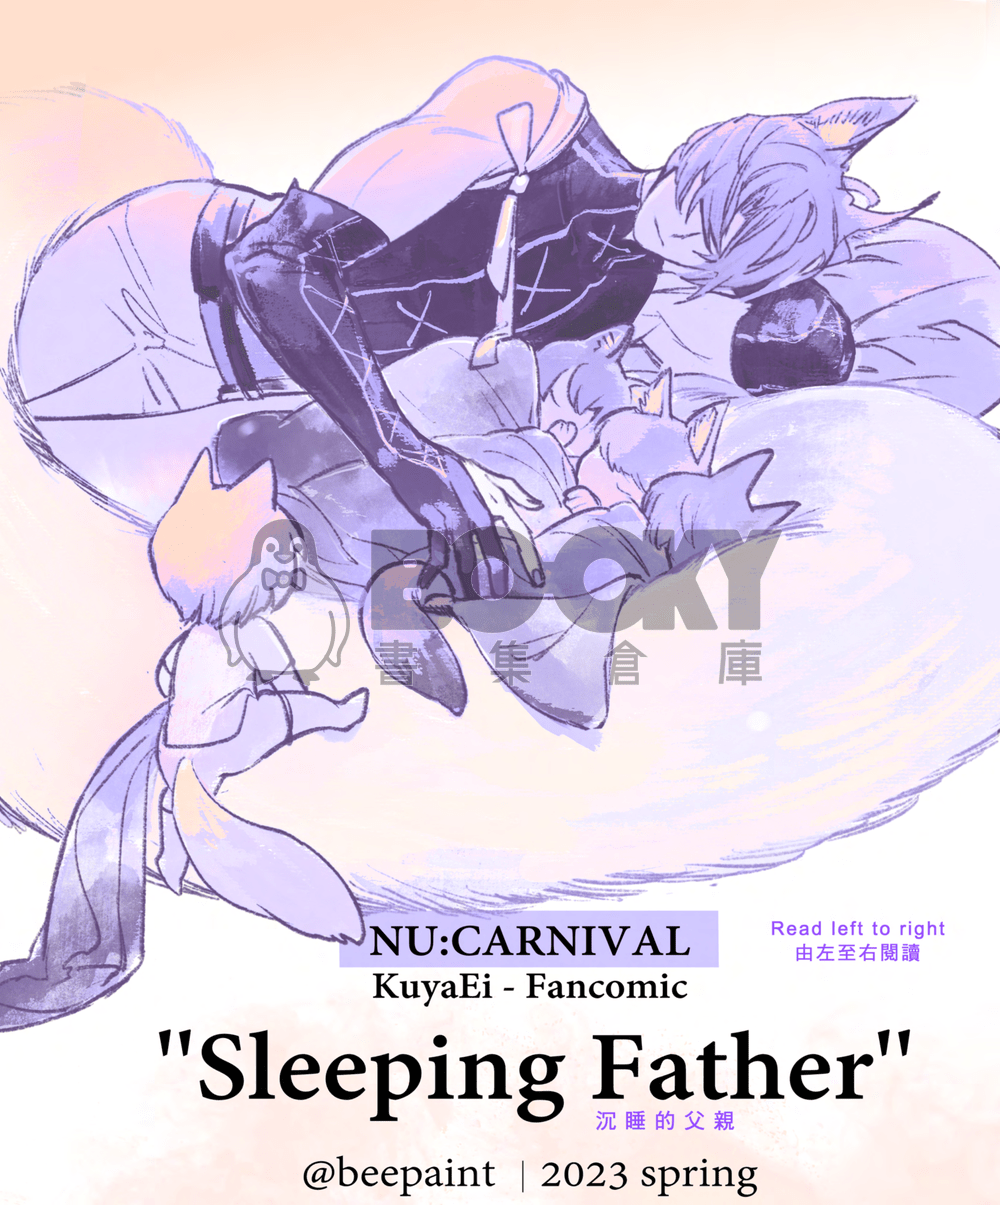 沉睡的父親 Sleeping Father 試閱圖片